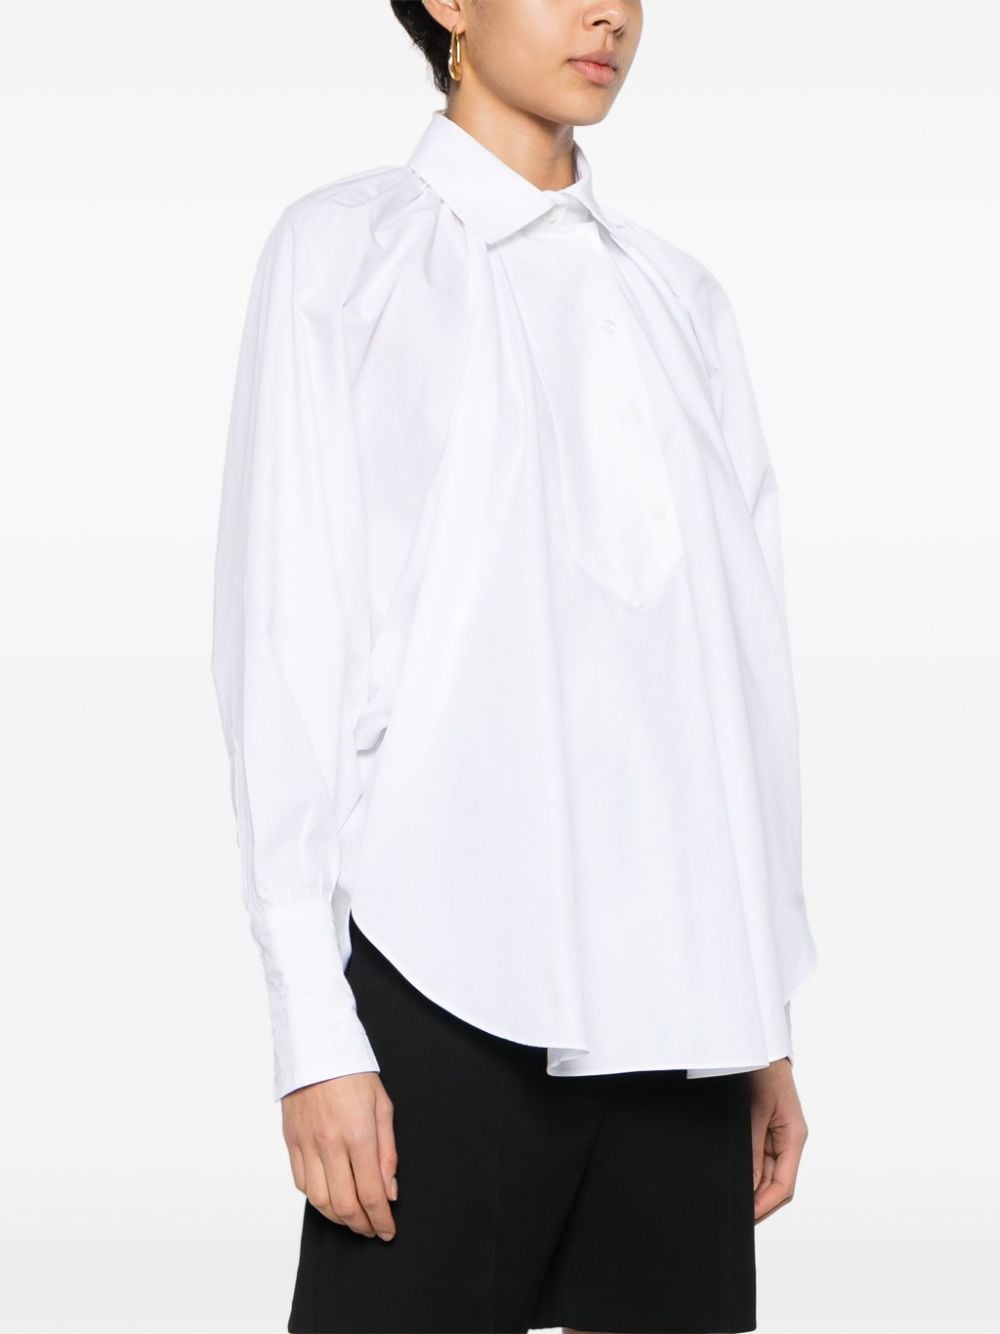 Artist cotton blouse<BR/><BR/><BR/>